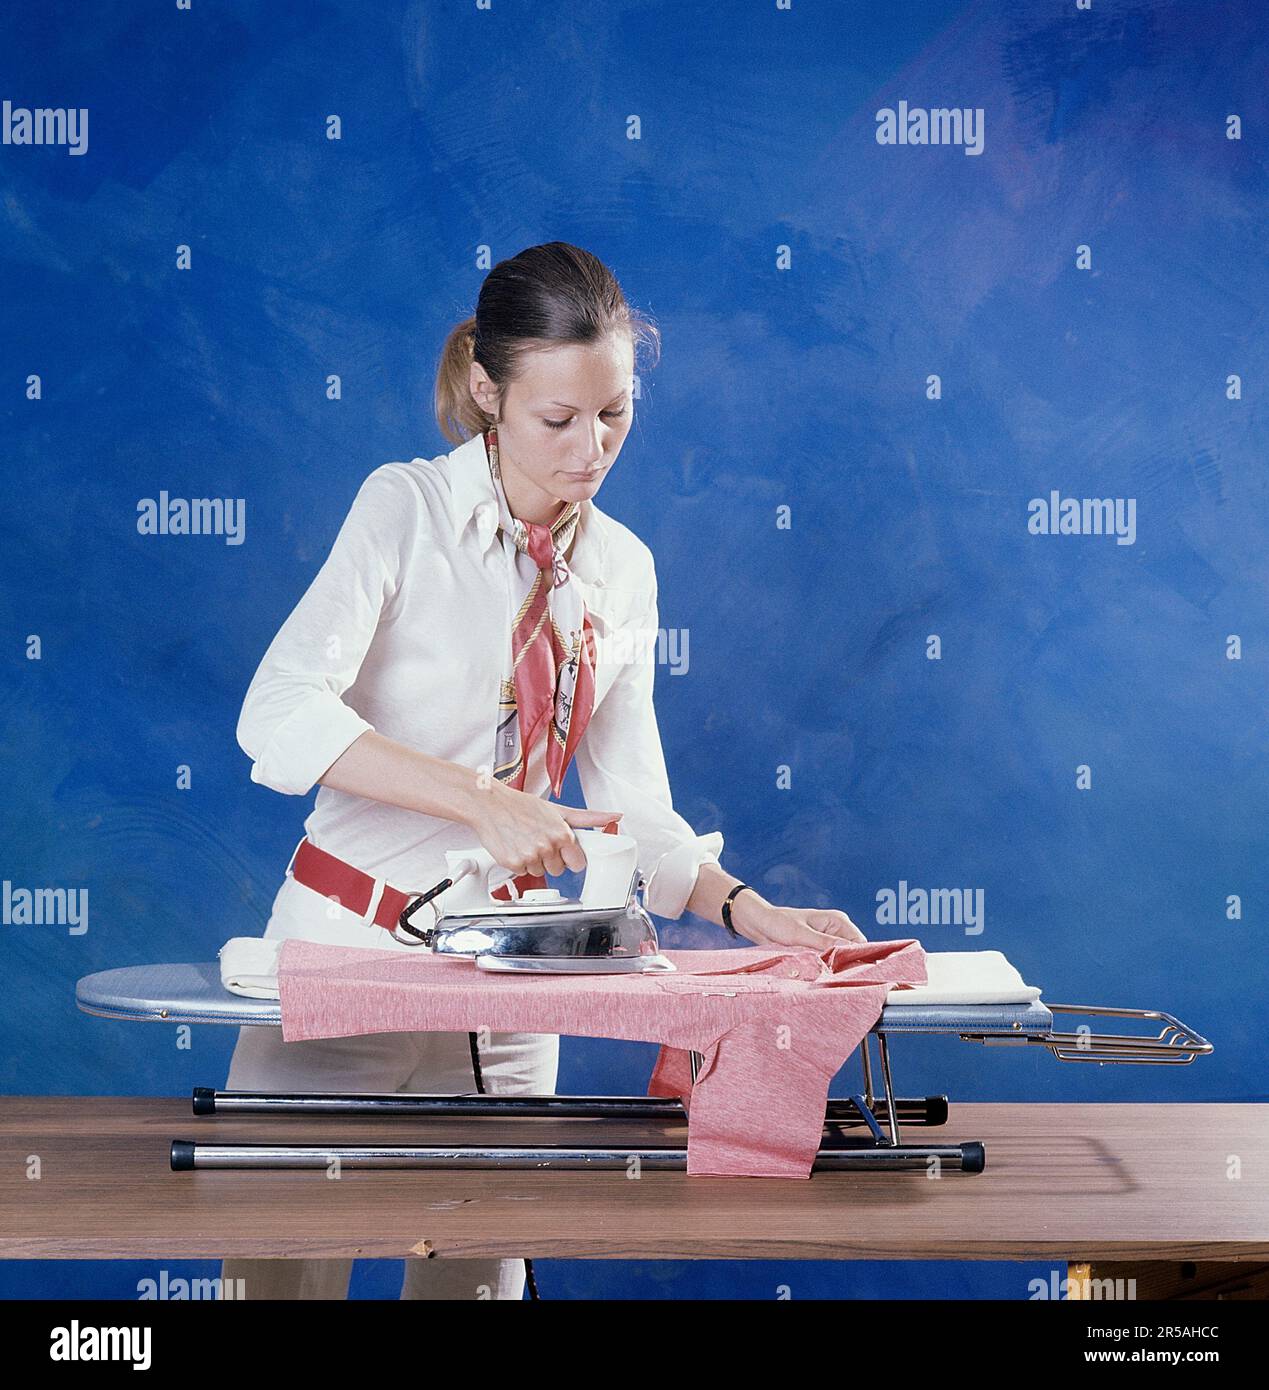 Repassage dans le 1970s. Une femme a vu repasser ses vêtements. Elle est habillée d'une chemise et d'un pantalon blancs et d'une ceinture rouge avec des pinces en métal, un accessoire typique de la décennie. Suède 1971. Kristoffersson réf. BV79-5 Banque D'Images